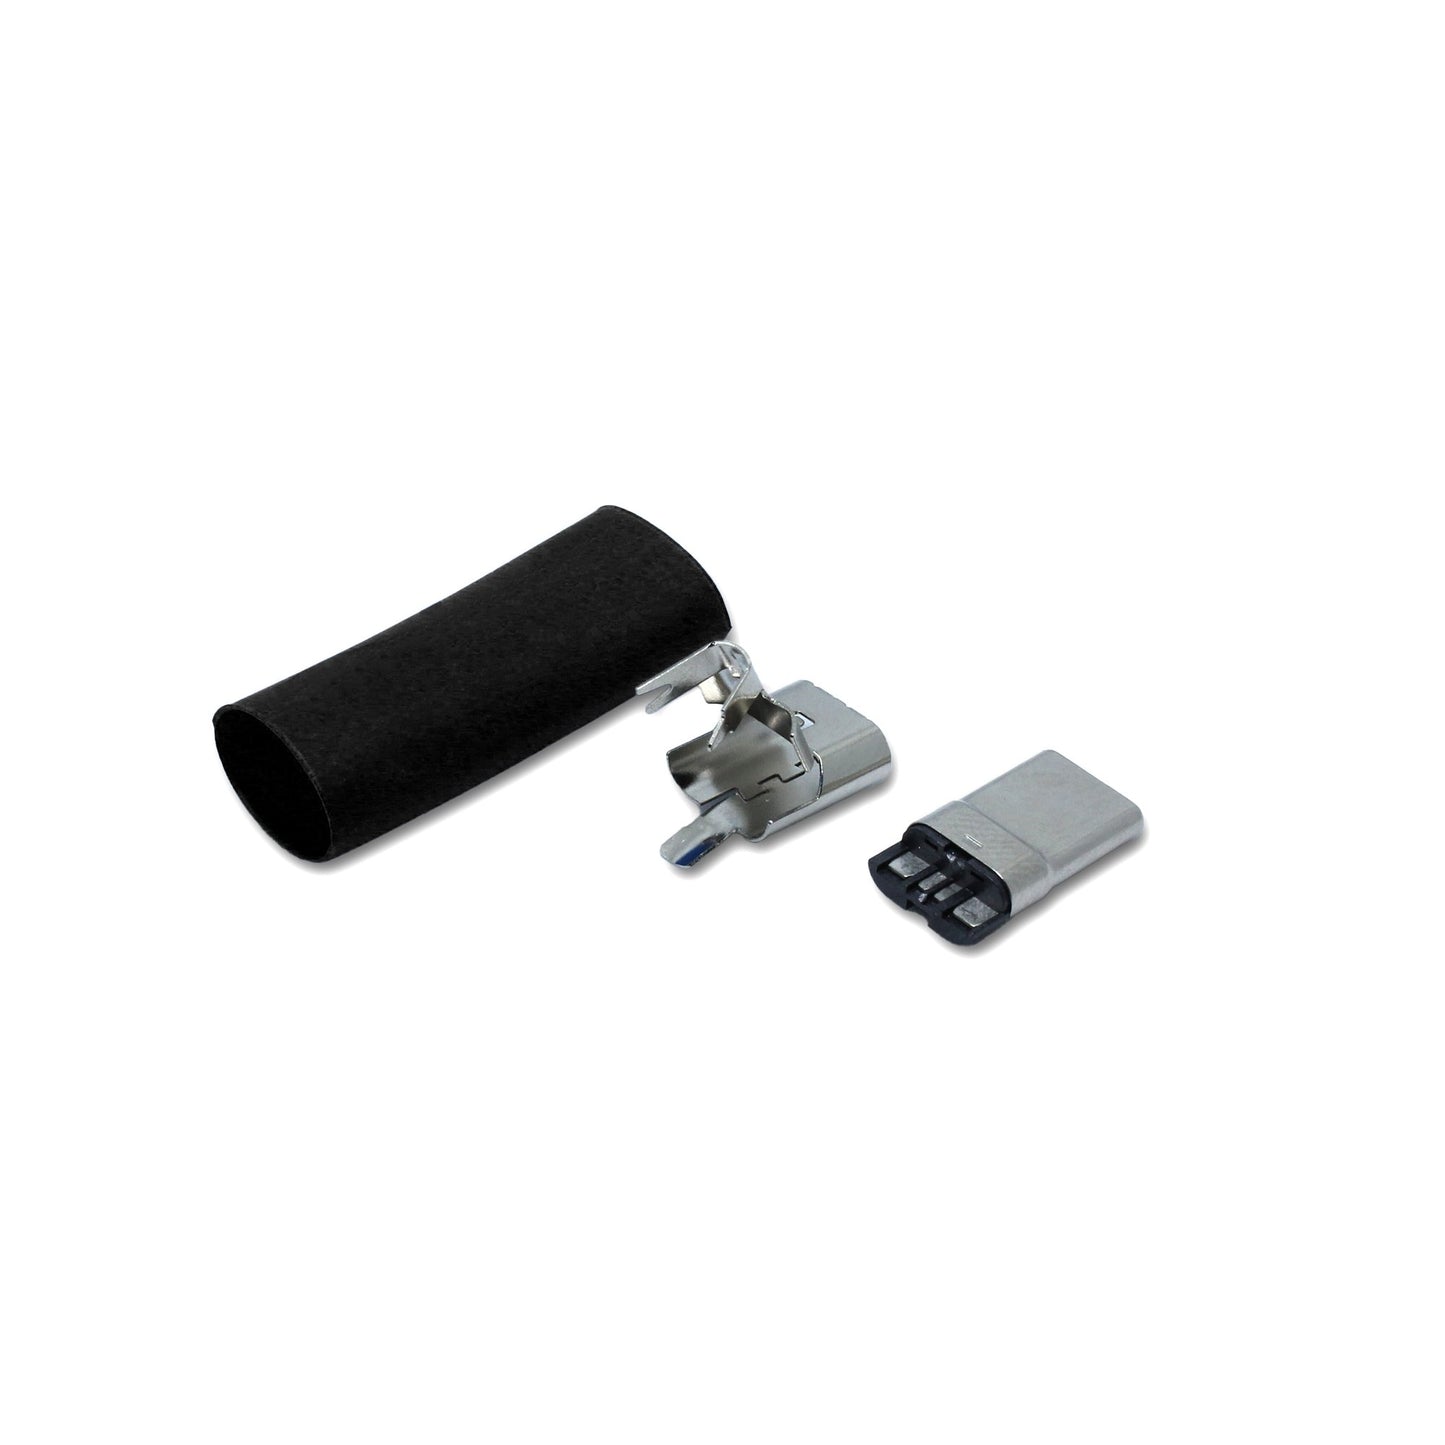 Ein Schrumpfschlauch in schwarz und Metallteile für den USB C Anschluss